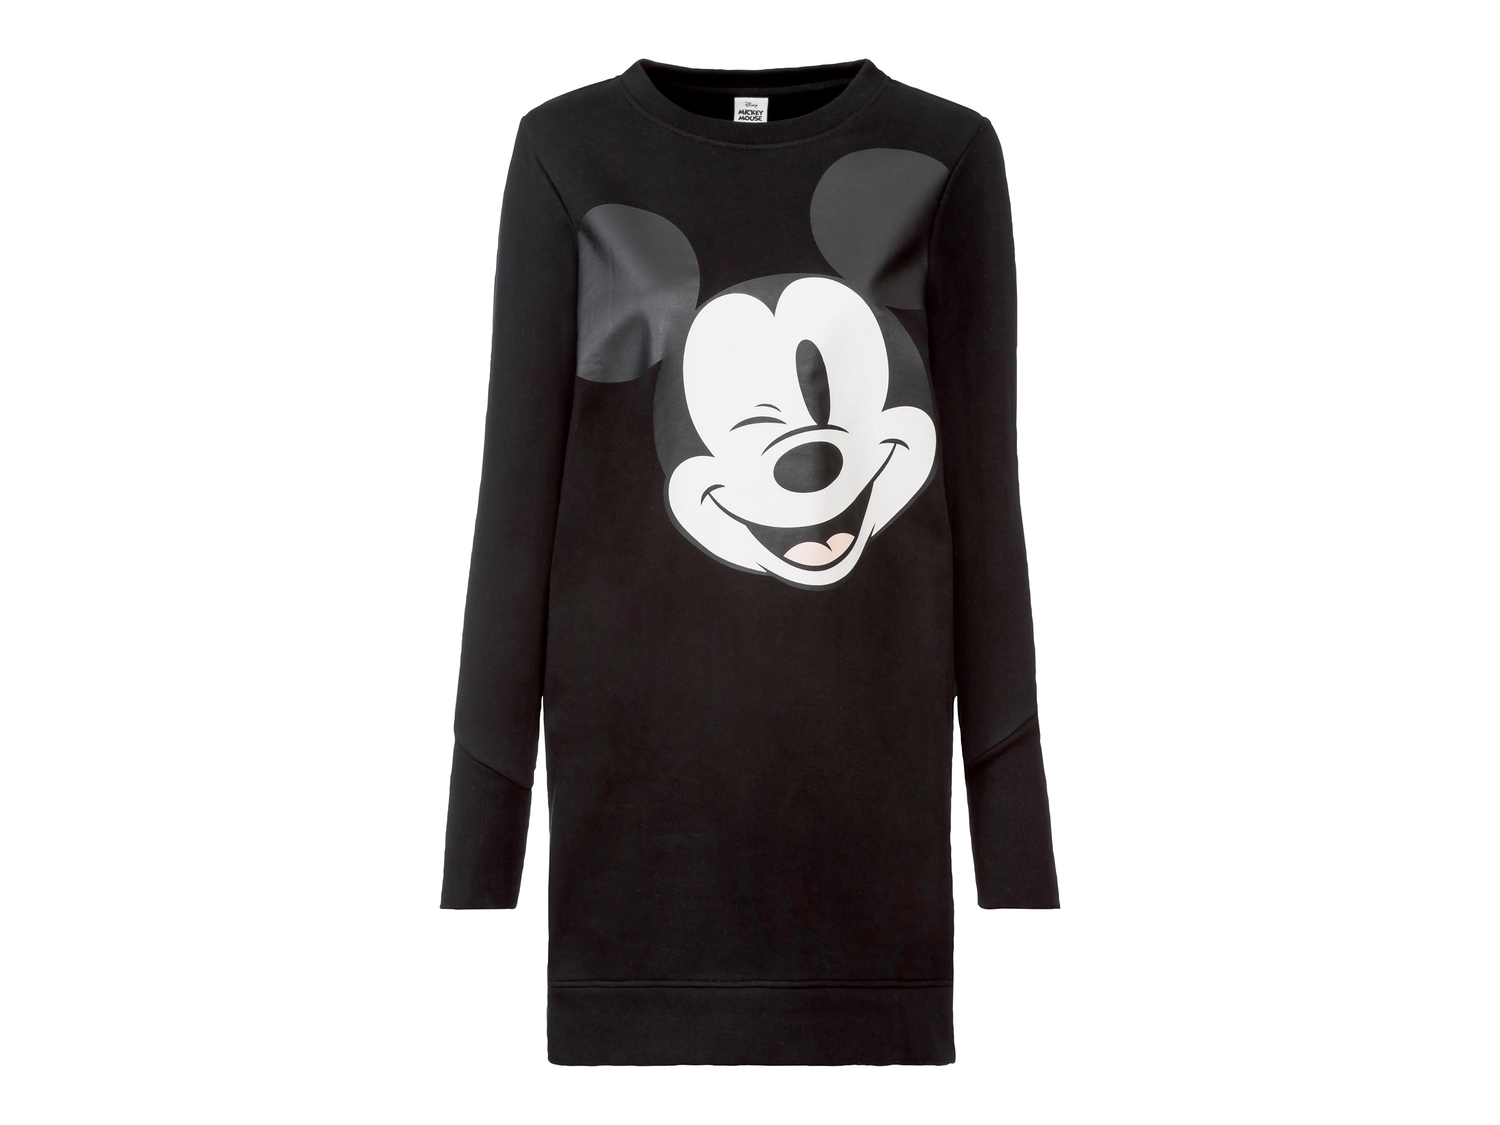 Vestito sportivo da donna Snoopy, Minnie, Mickey Mouse Oeko-tex, prezzo 12.99 € ...